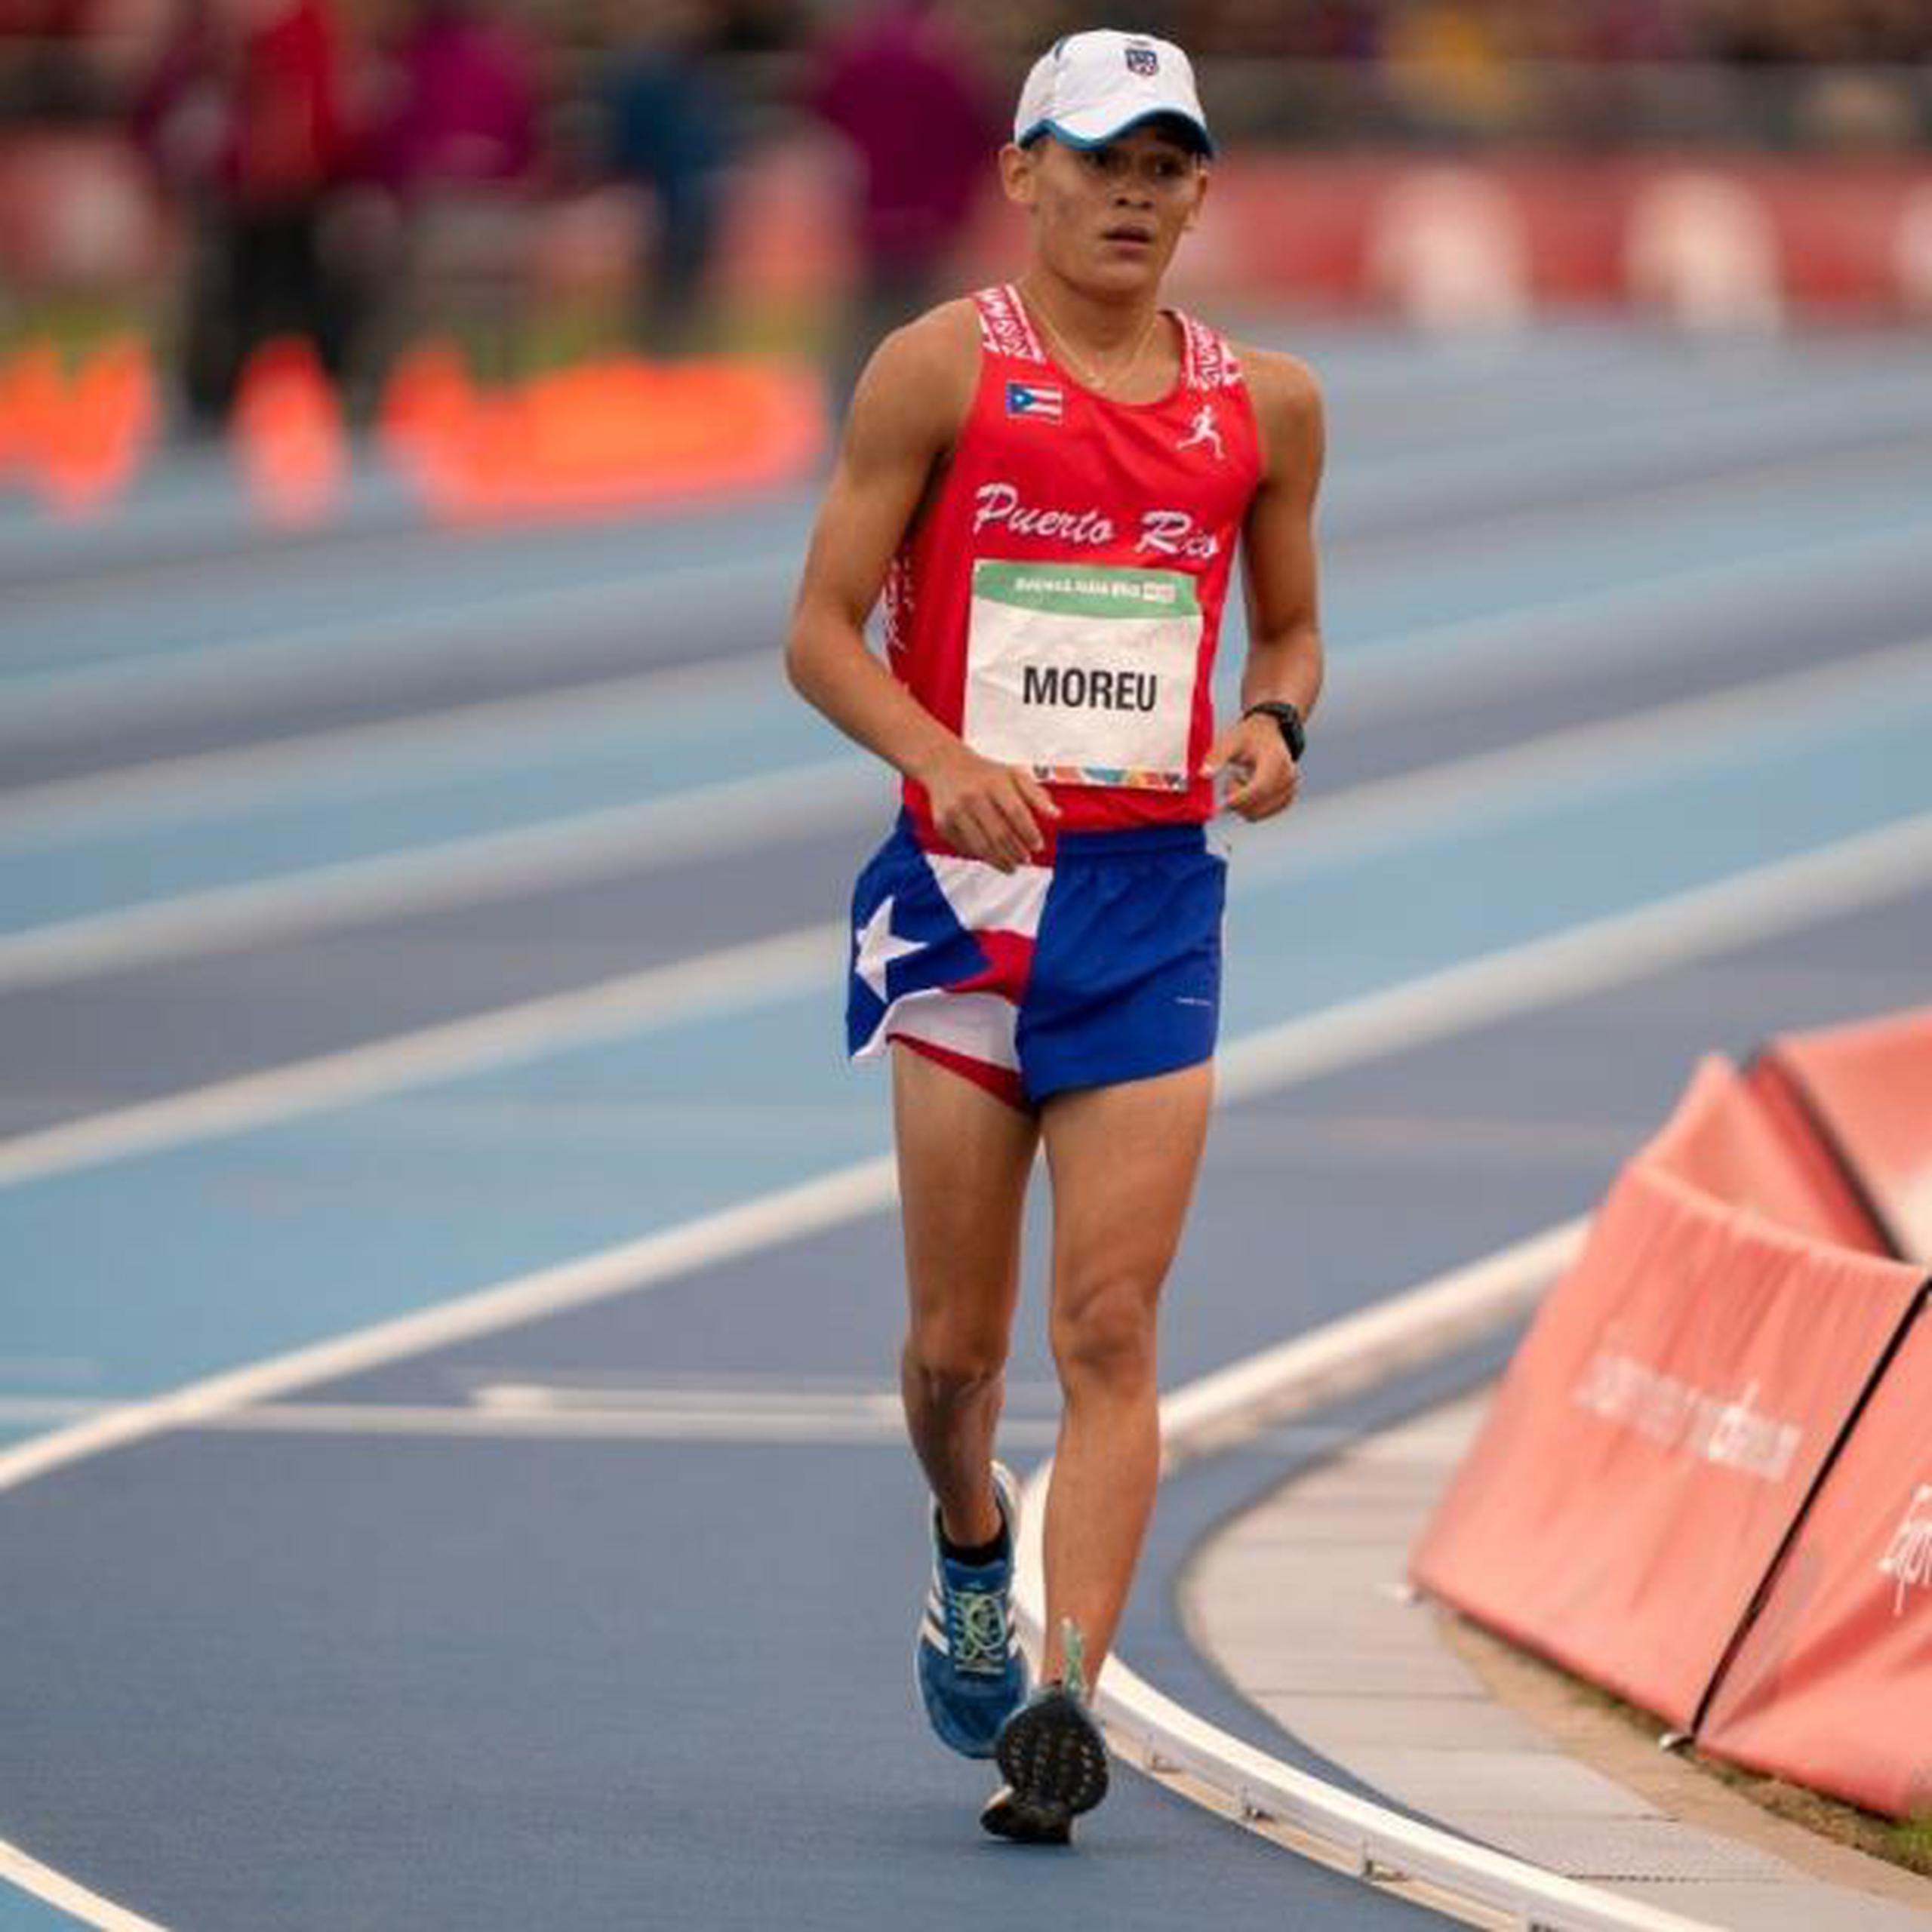 El medallista olímpico juvenil de bronce en Buenos Aires 2018, Jan Moreu. (Suministrada)